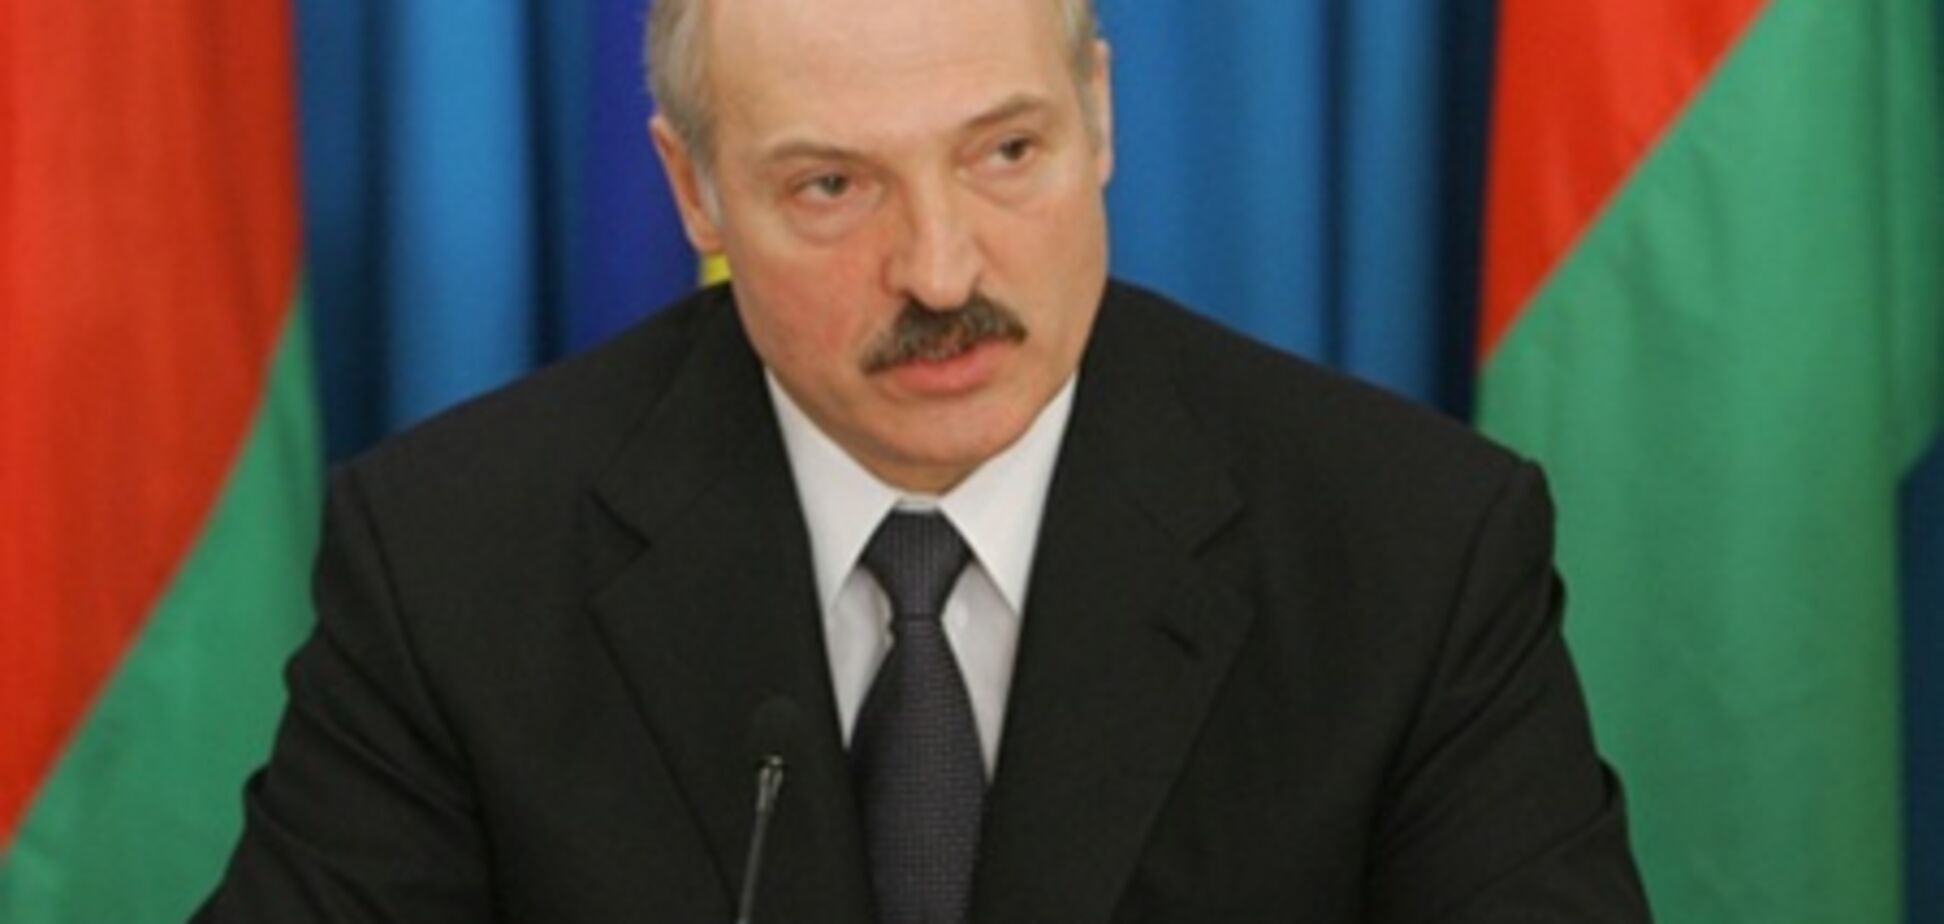 Страны ЕЭП к 2015 станут единым государством - Лукашенко